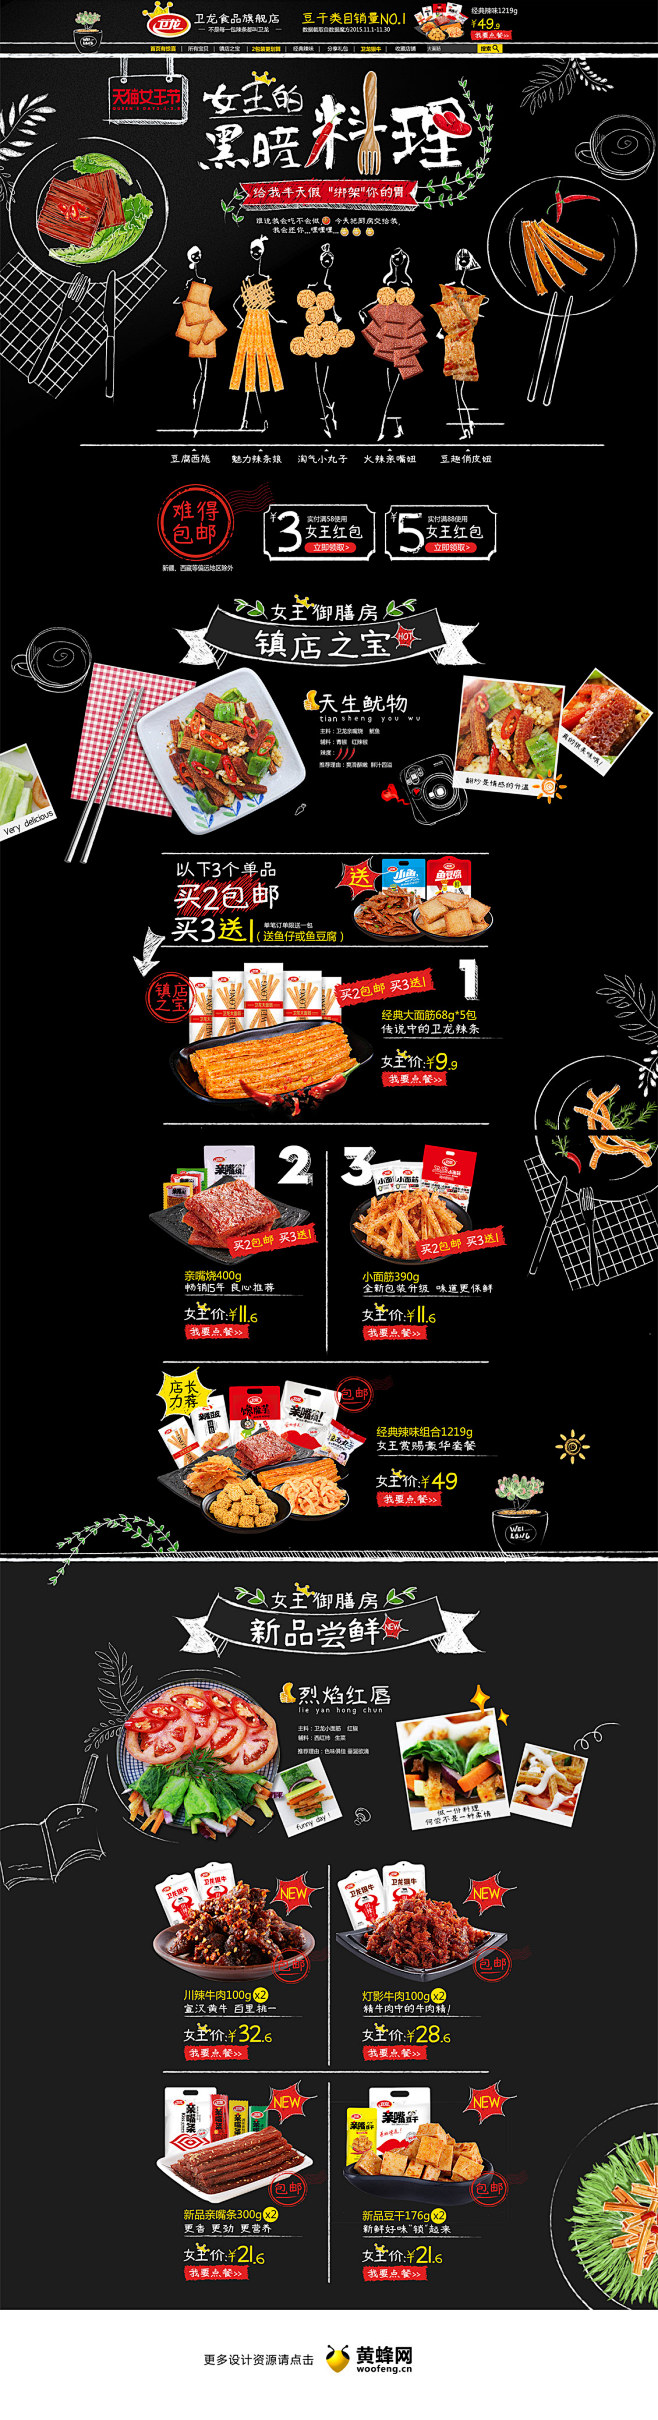 卫龙食品天猫女王节活动首页设计，来源自黄...